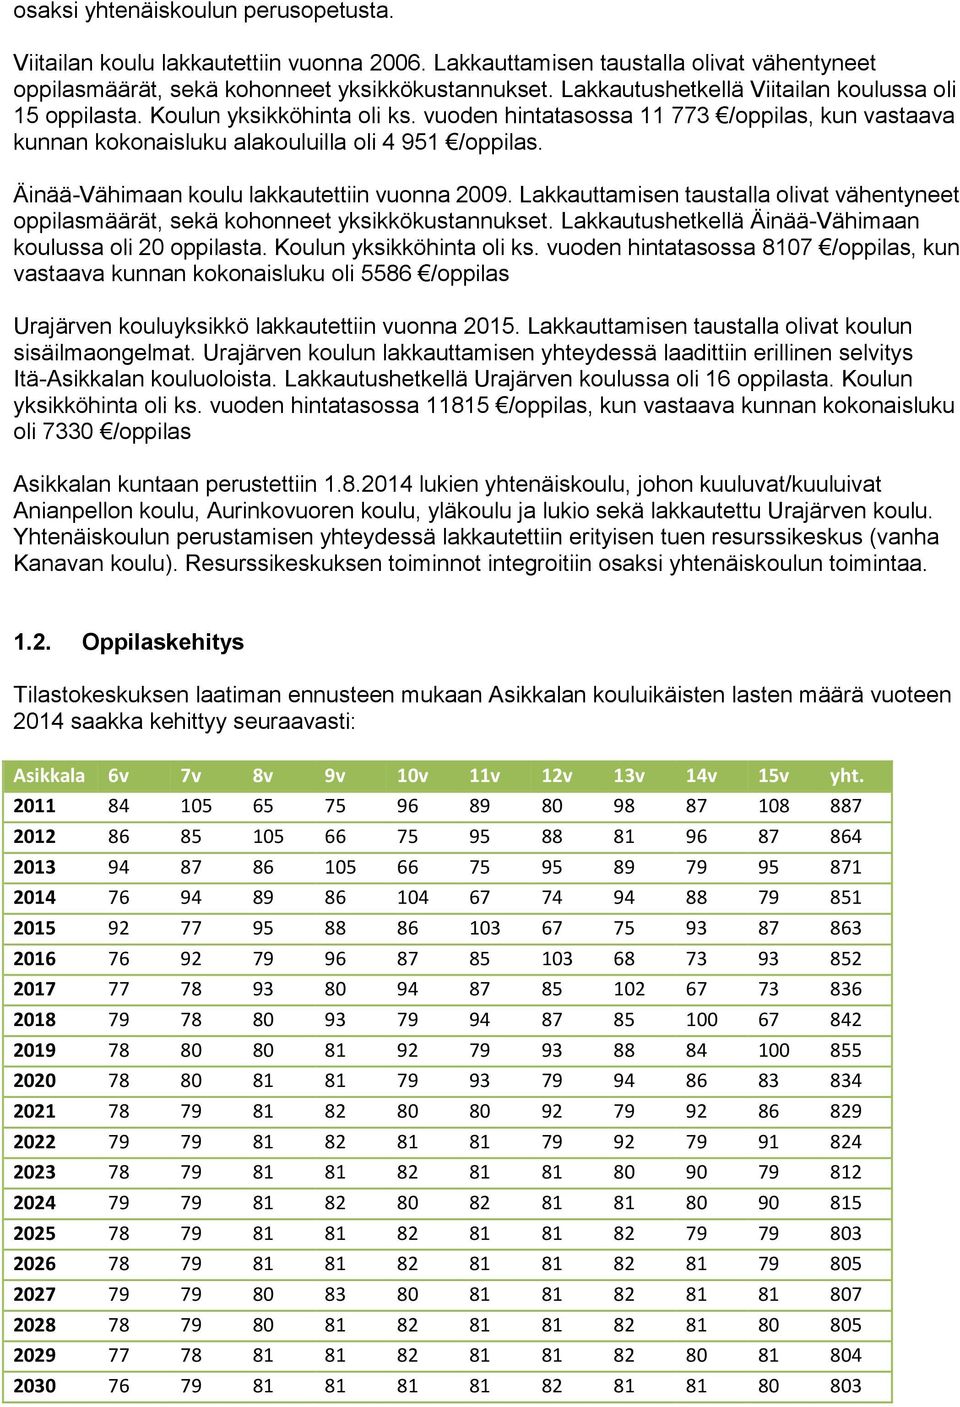 Äinää-Vähimaan koulu lakkautettiin vuonna 2009. Lakkauttamisen taustalla olivat vähentyneet oppilasmäärät, sekä kohonneet yksikkökustannukset.